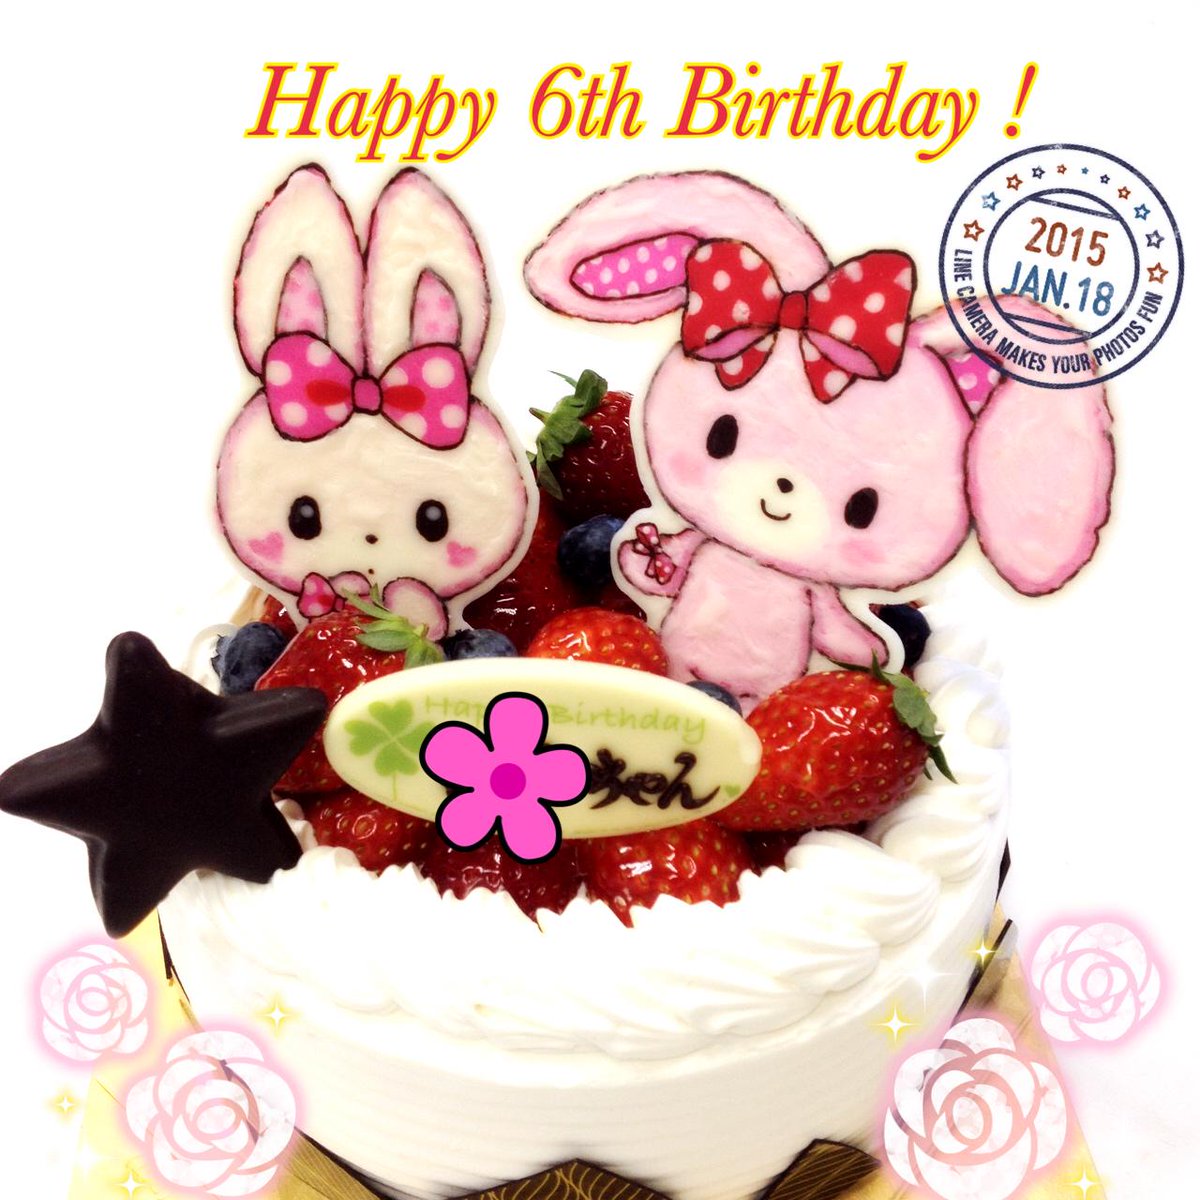 キャラデコ職人 ぼんぼんりぼんのイラストを飾った 6歳の女の子のバースデーケーキです お誕生日おめでとうございます Http T Co Qxadip6ufj Http T Co Lgdxsjqvtx Twitter